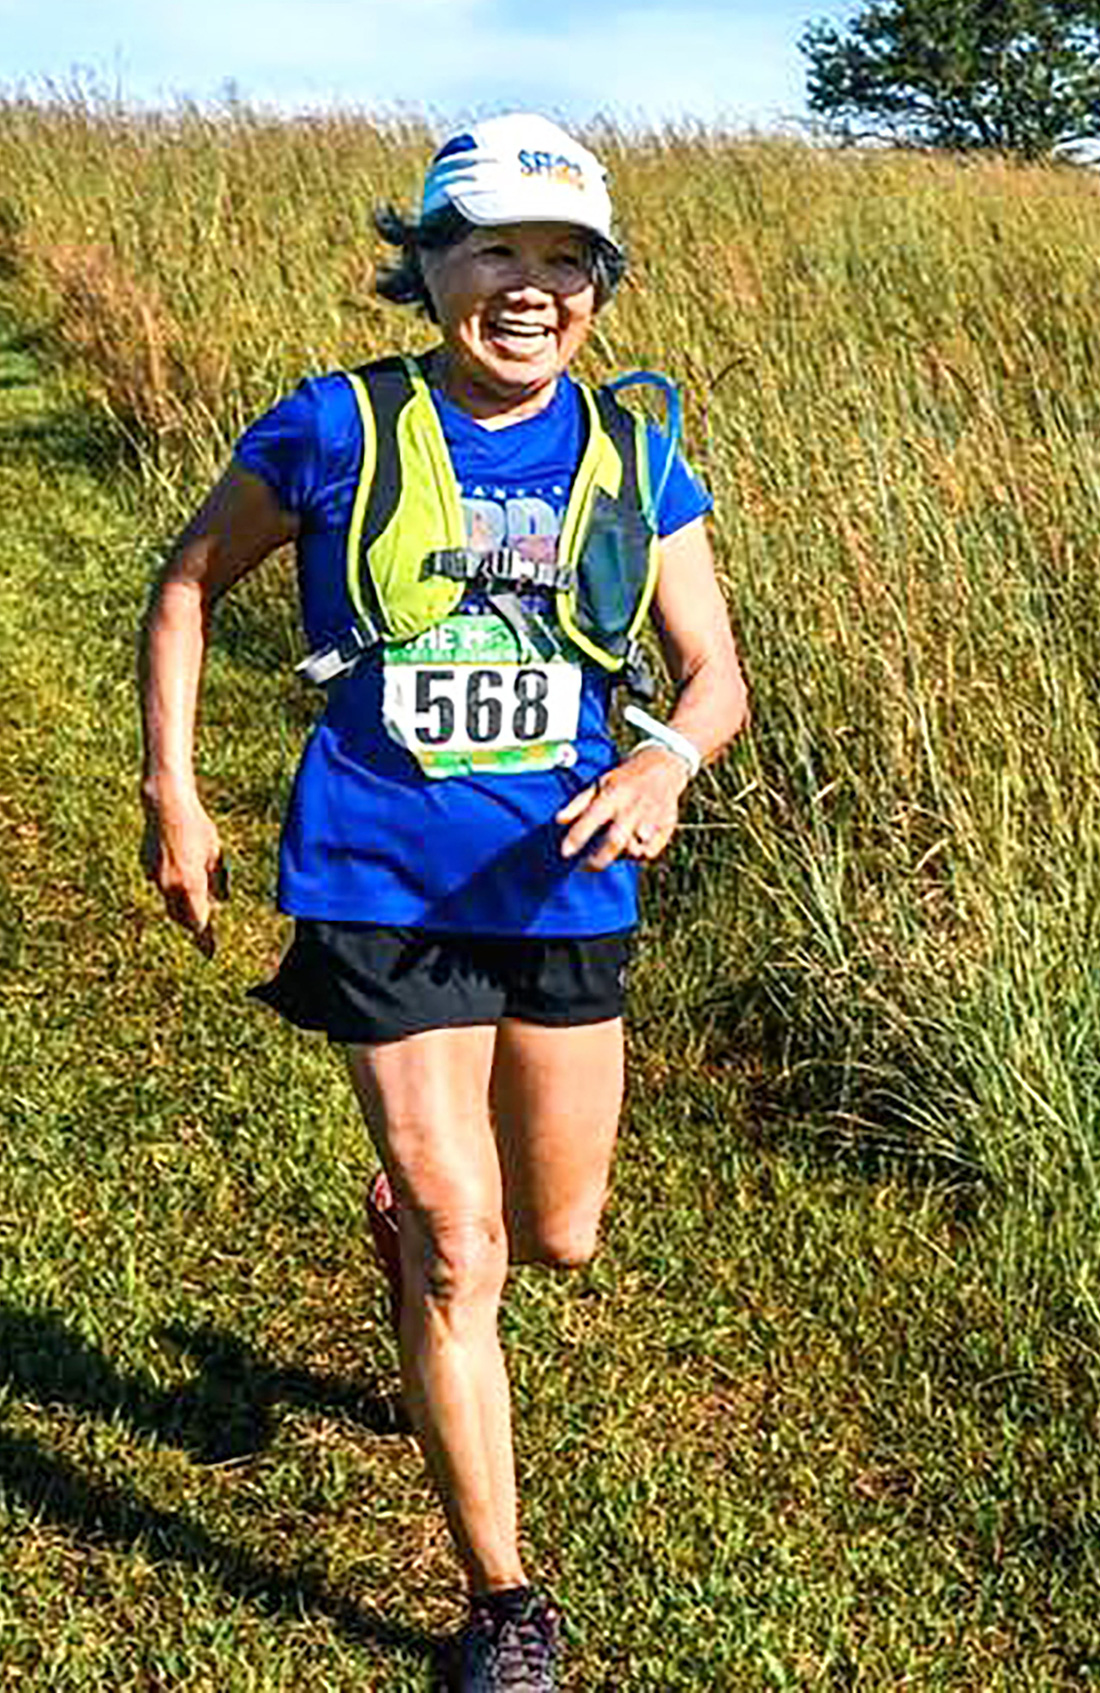 Bà Châu Smith trên hành trình chinh phục hơn 130 cuộc thi marathon khắp nơi trên thế giới - Ảnh: NVCC